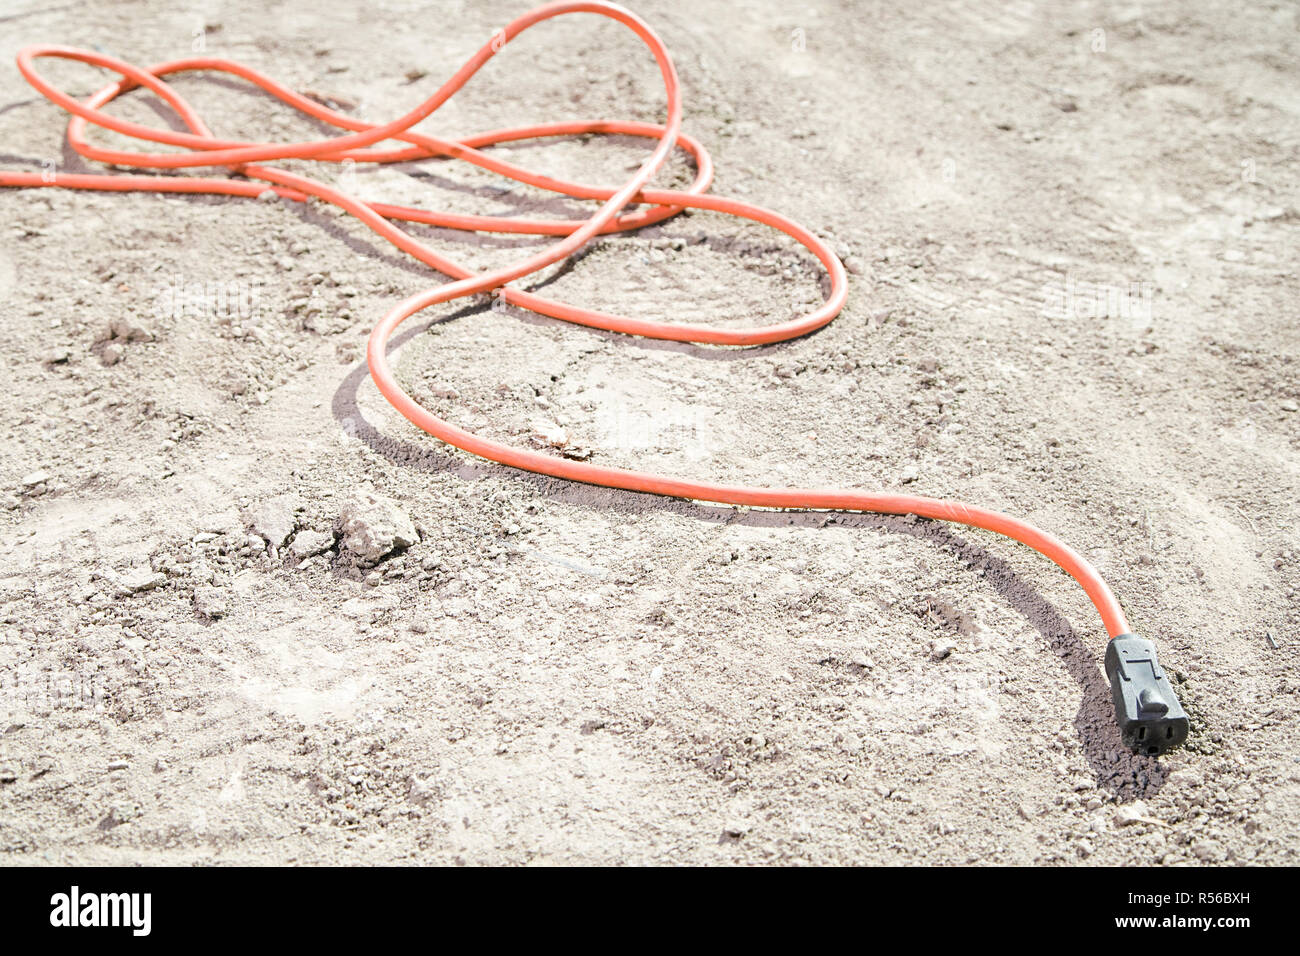 Ein Kabel auf dem Boden Stockfotografie - Alamy